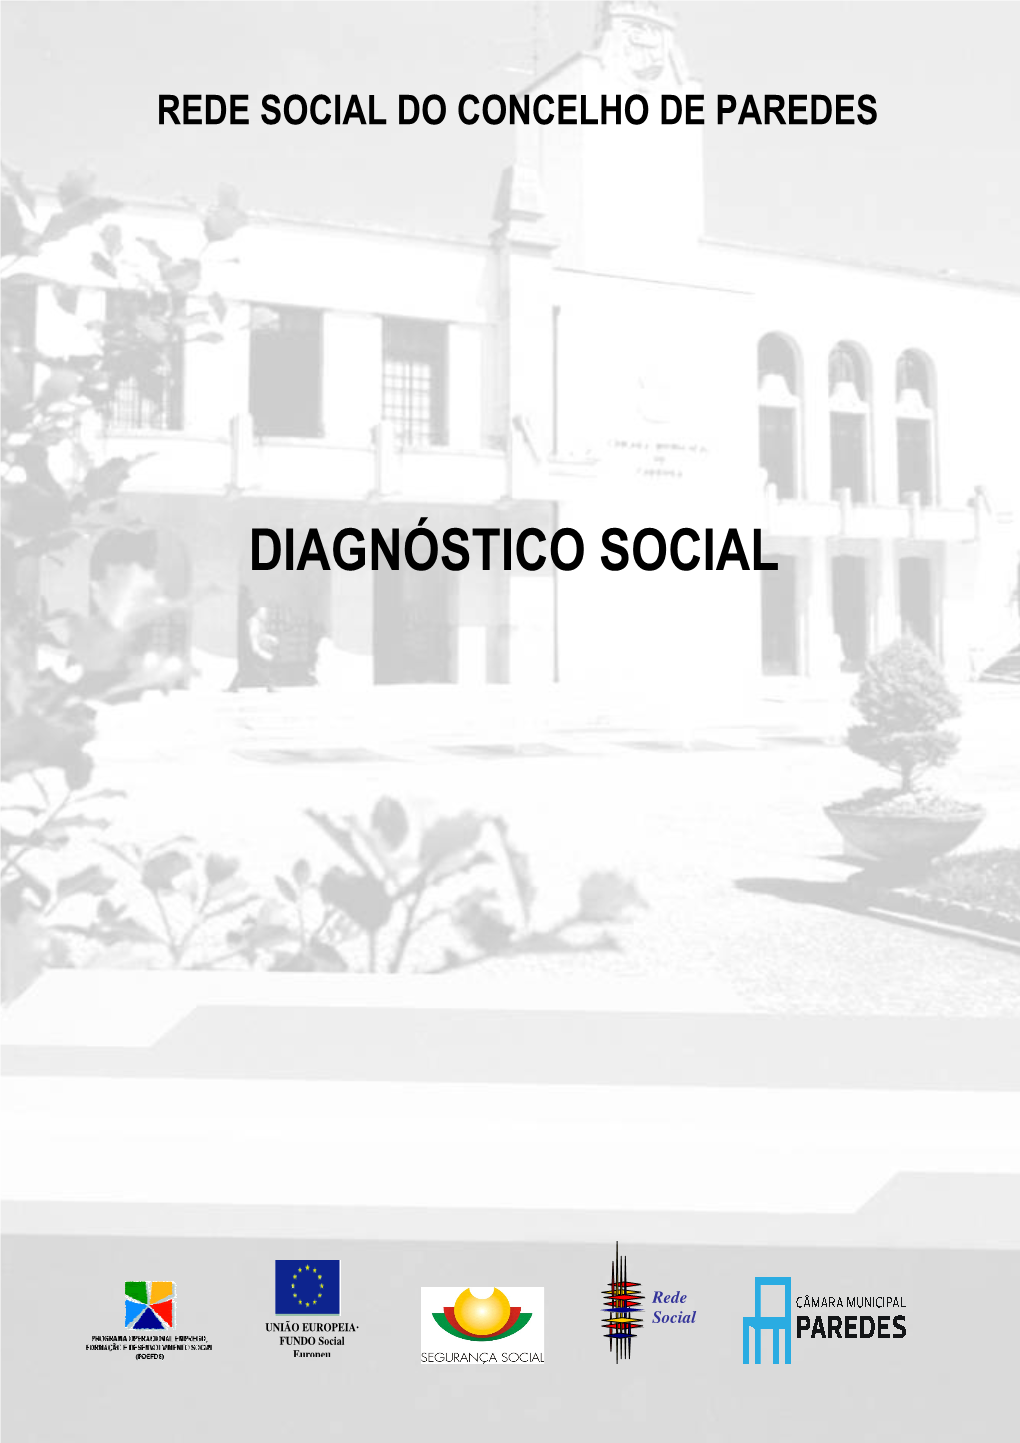 Diagnóstico Social